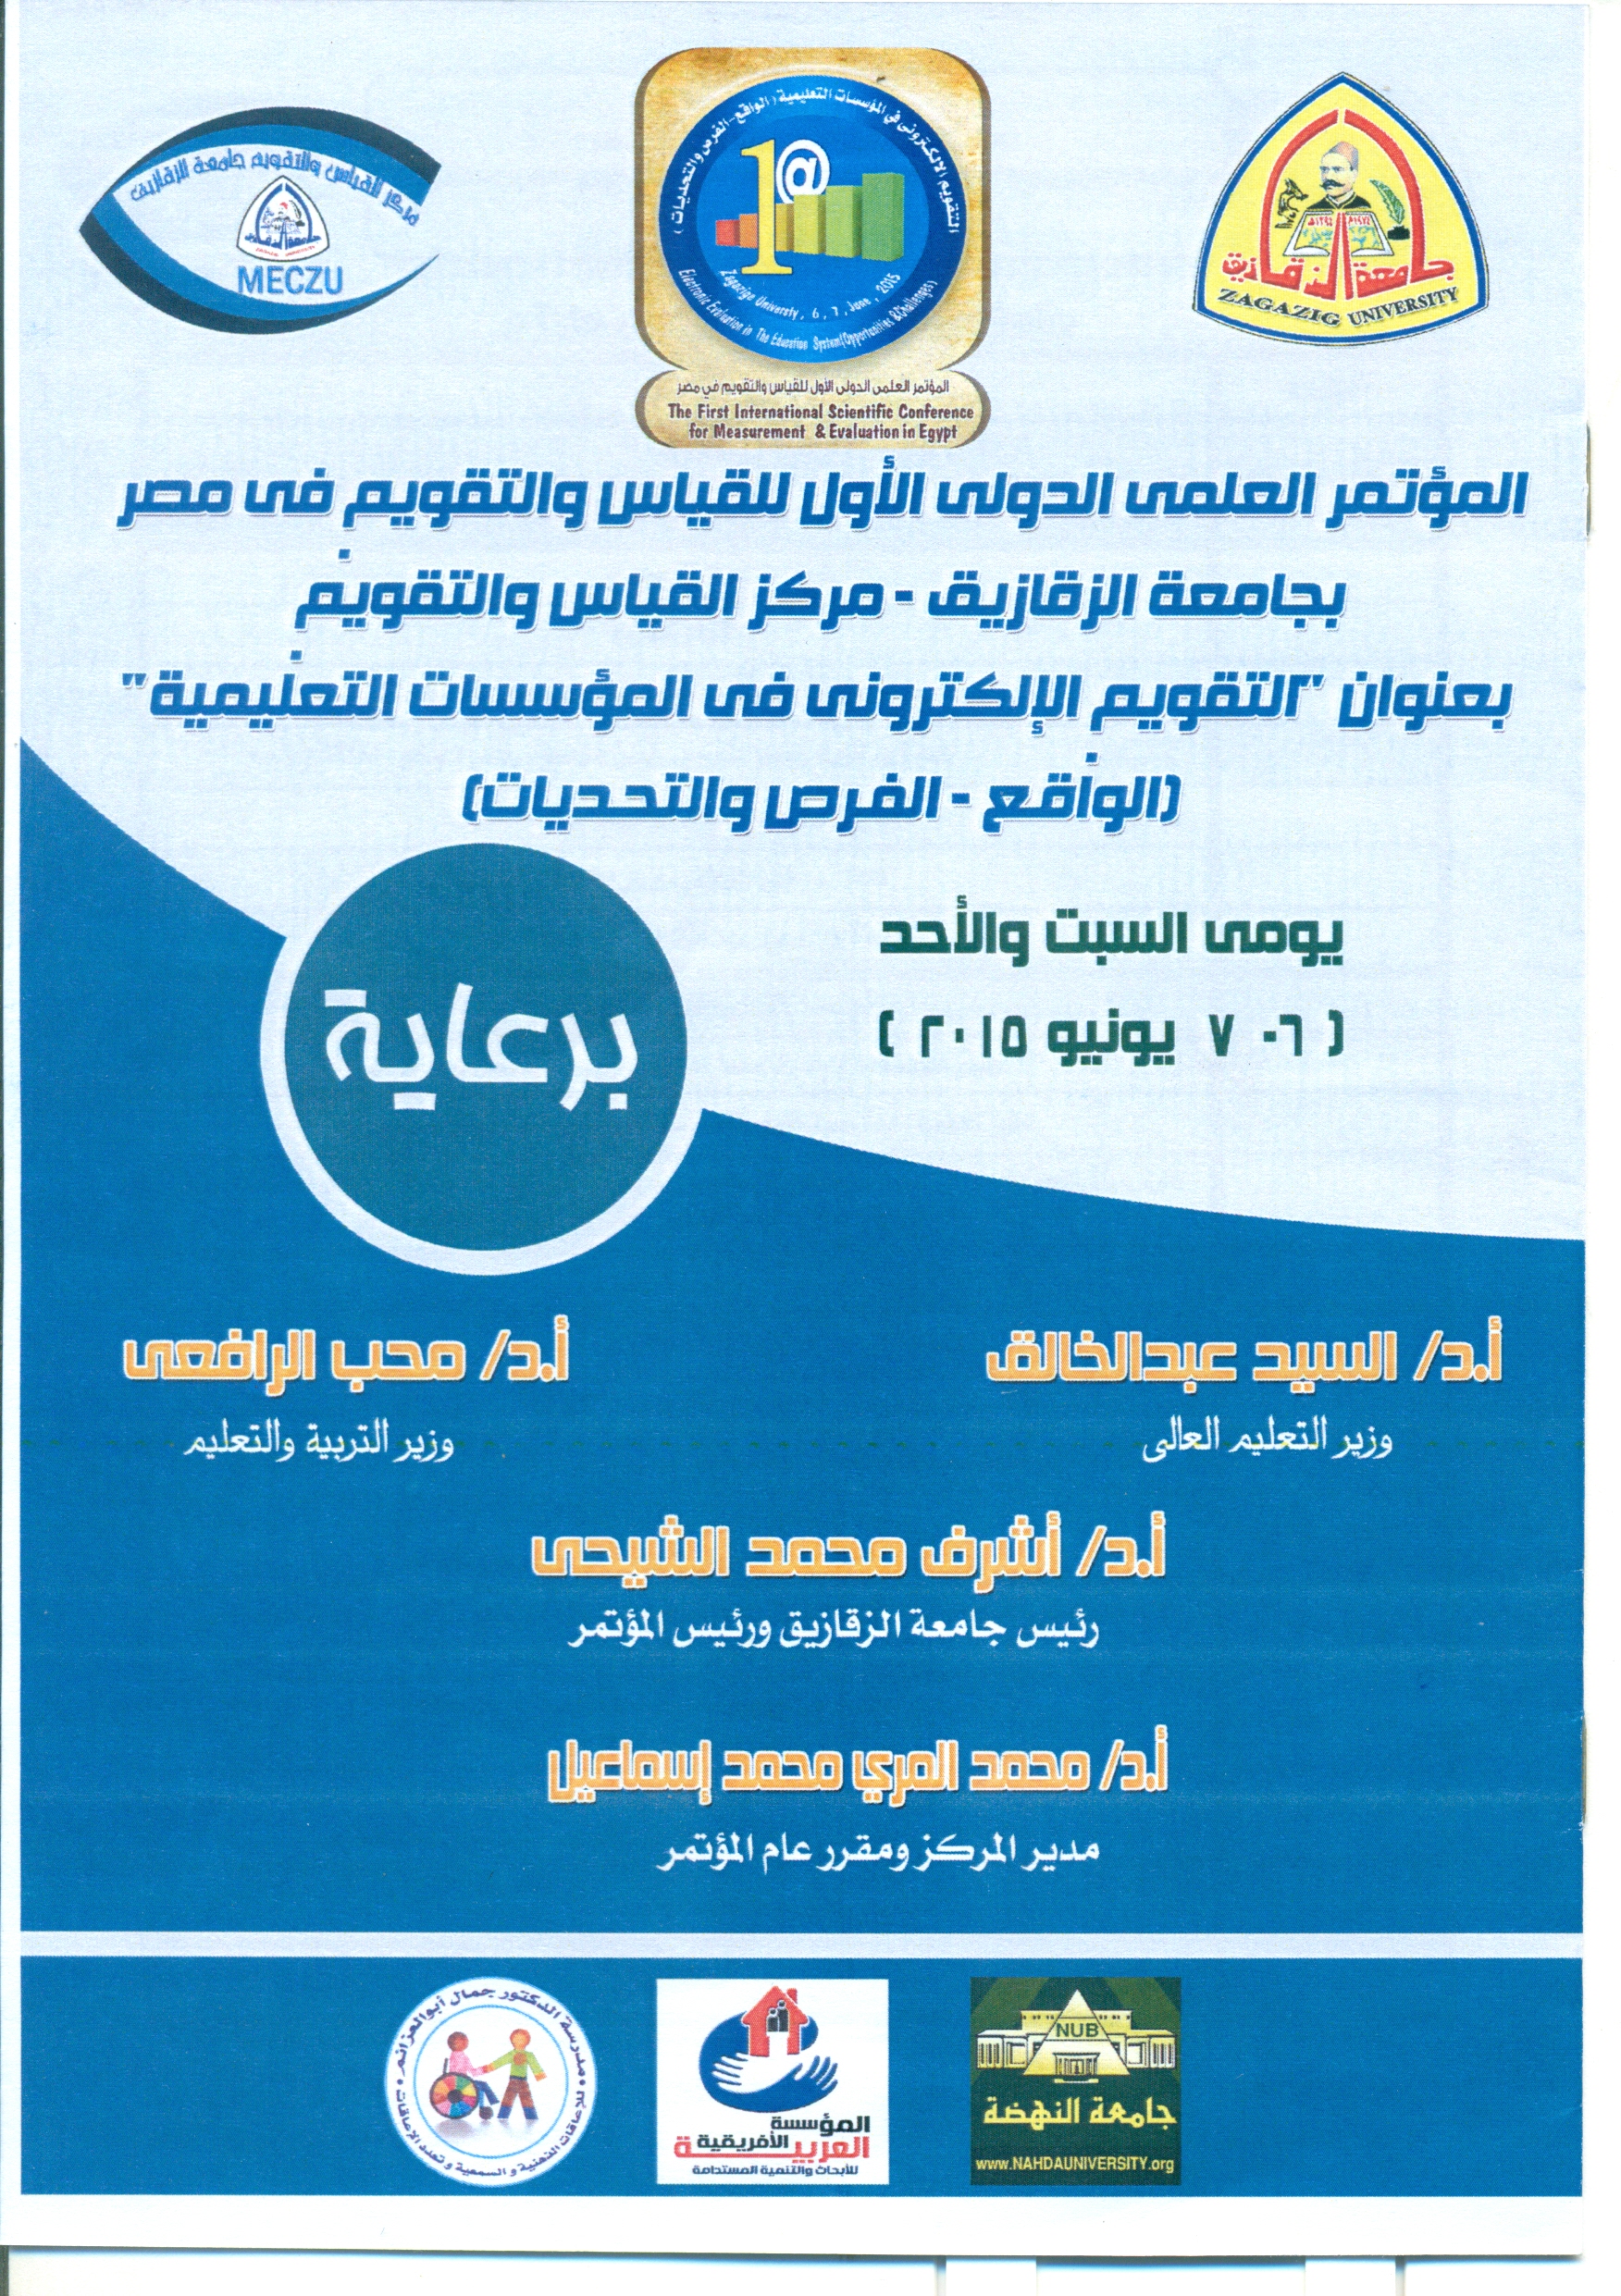 جامعة الزقازيق تحتضن تظاهرة عربية علمية كبري يوم السبت 6 يونية